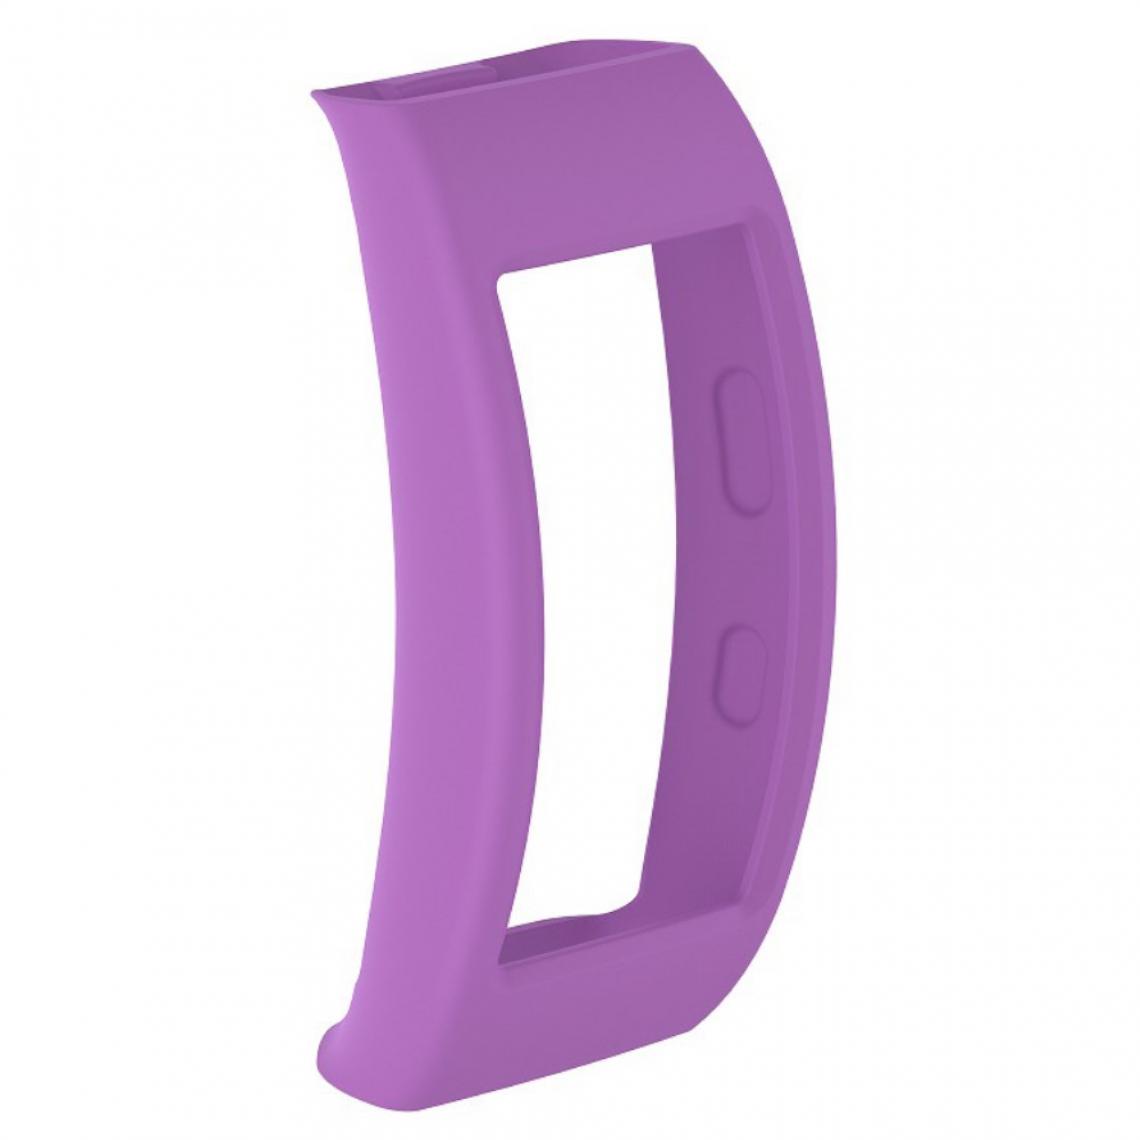 Other - Coque en silicone souple violet pour votre Samsung Gear Fit2 Pro - Accessoires bracelet connecté